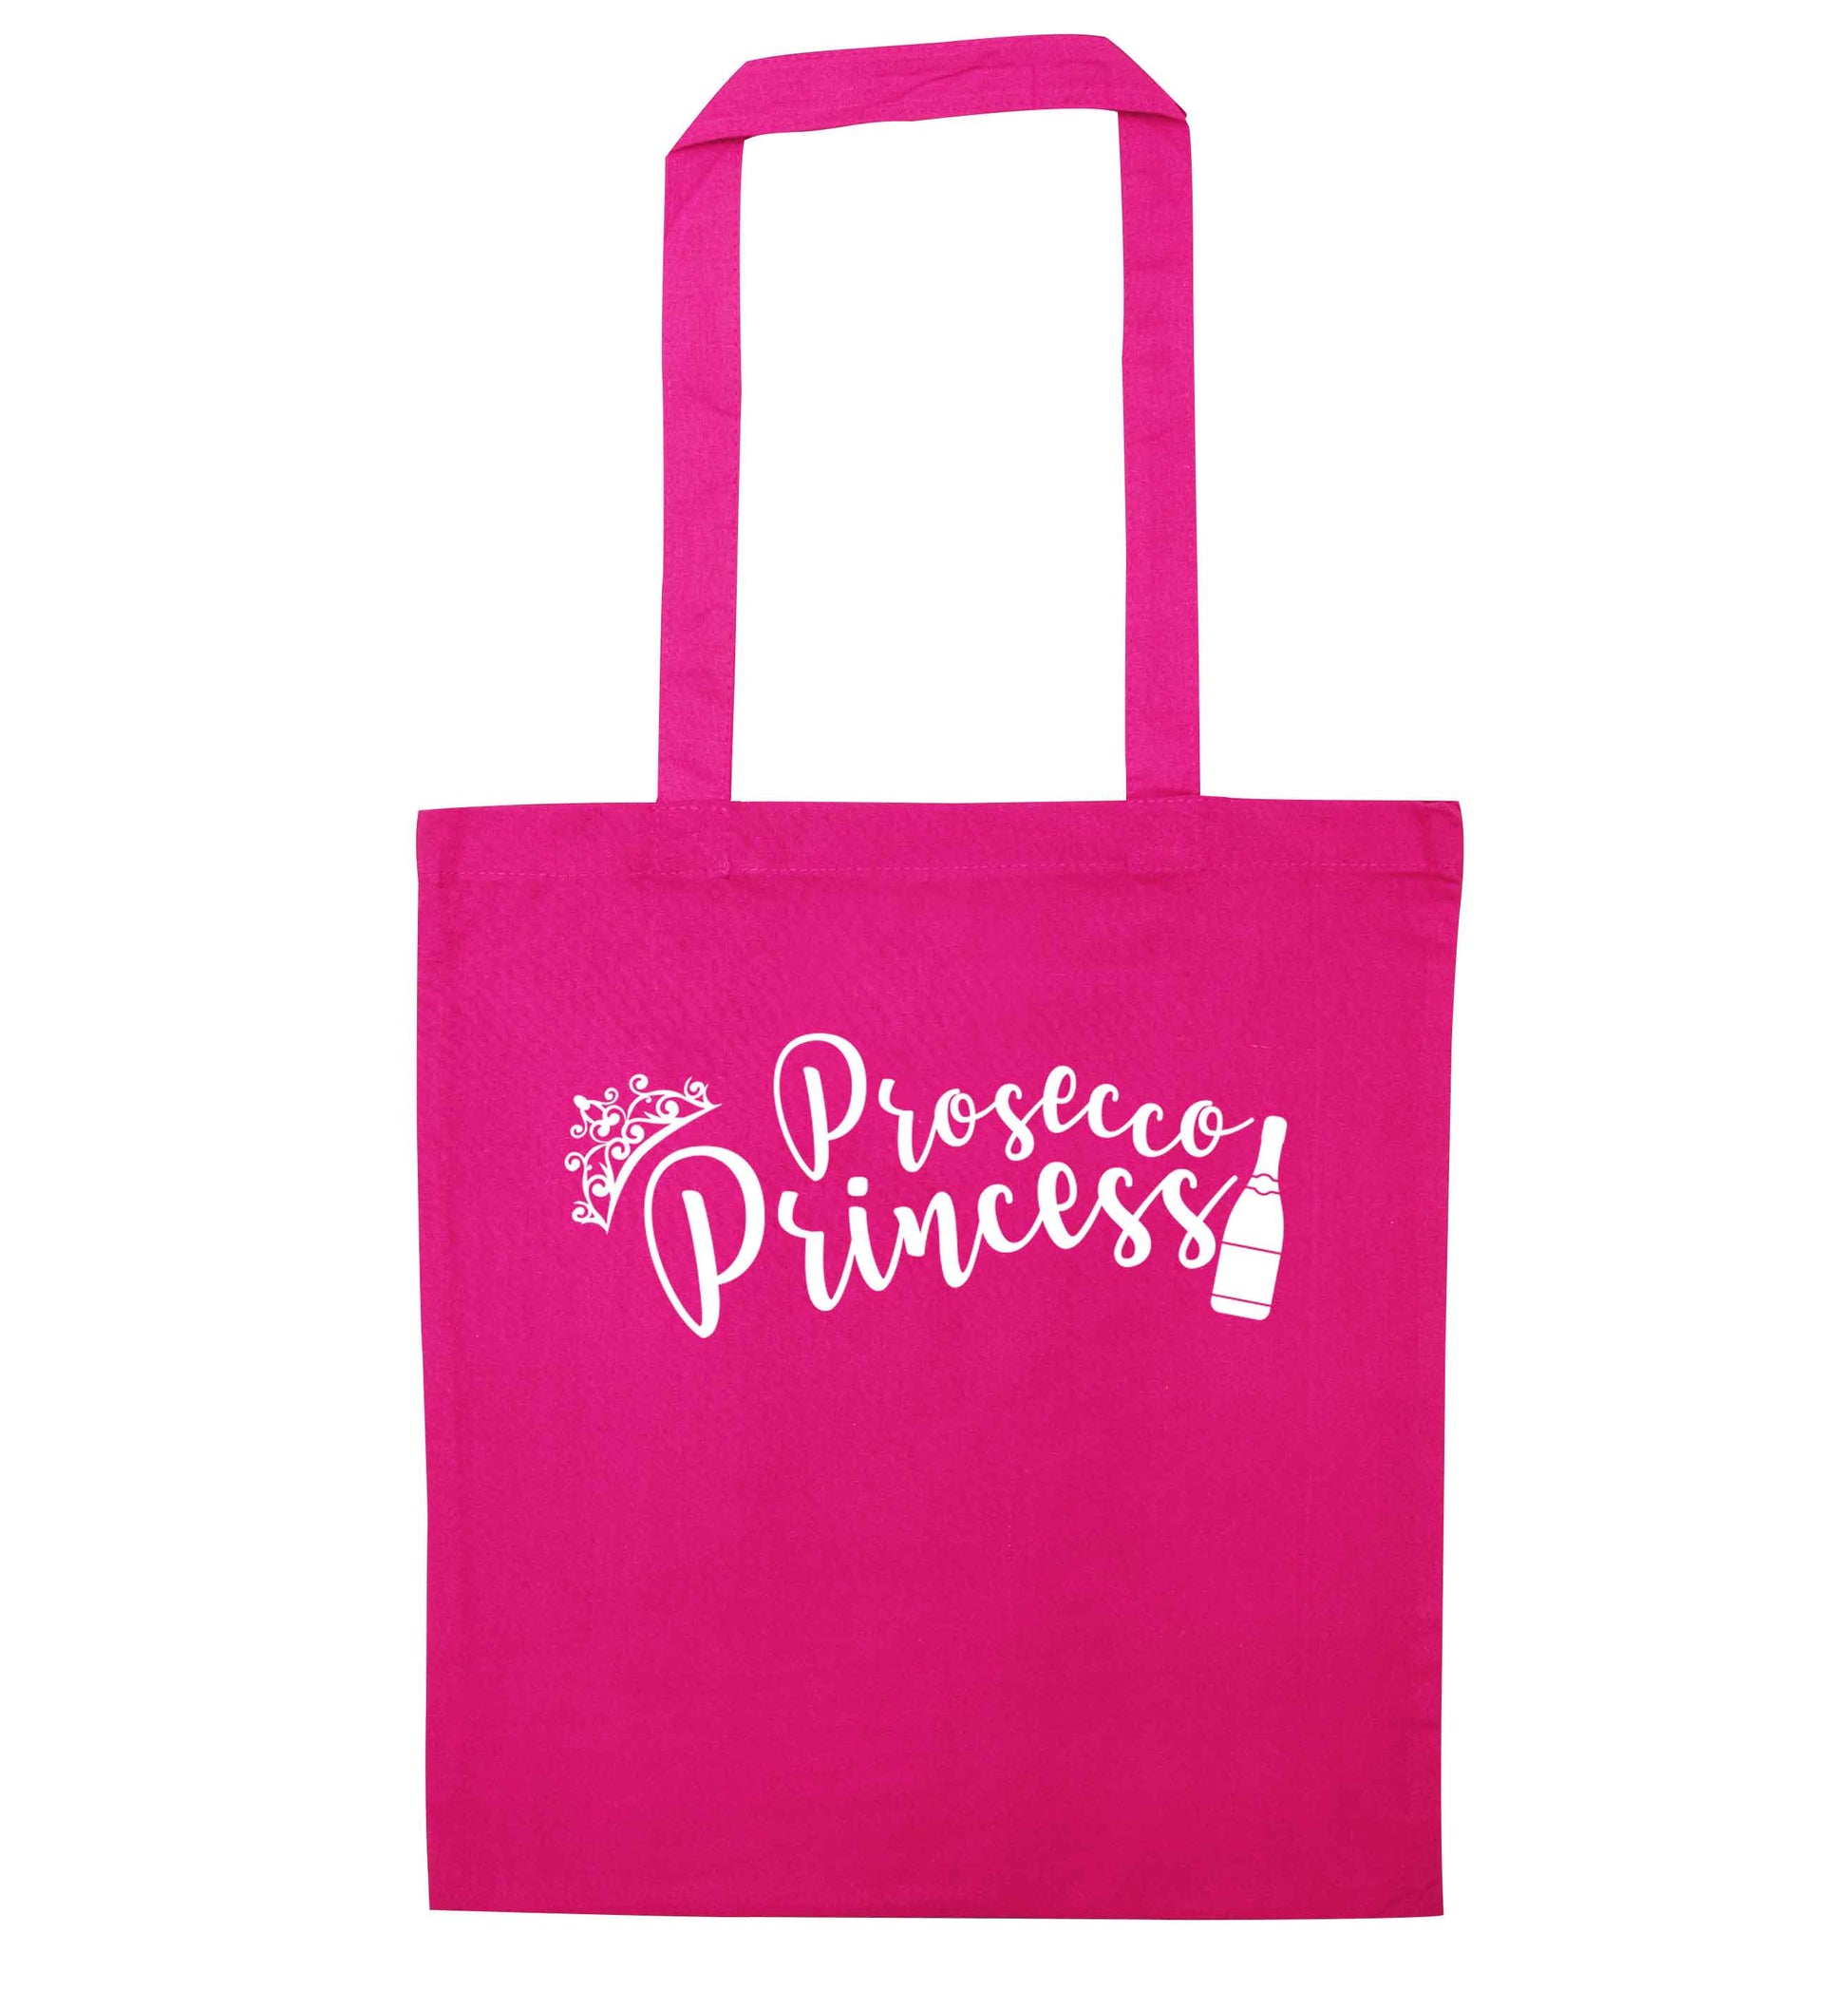 Prosecco princess pink tote bag